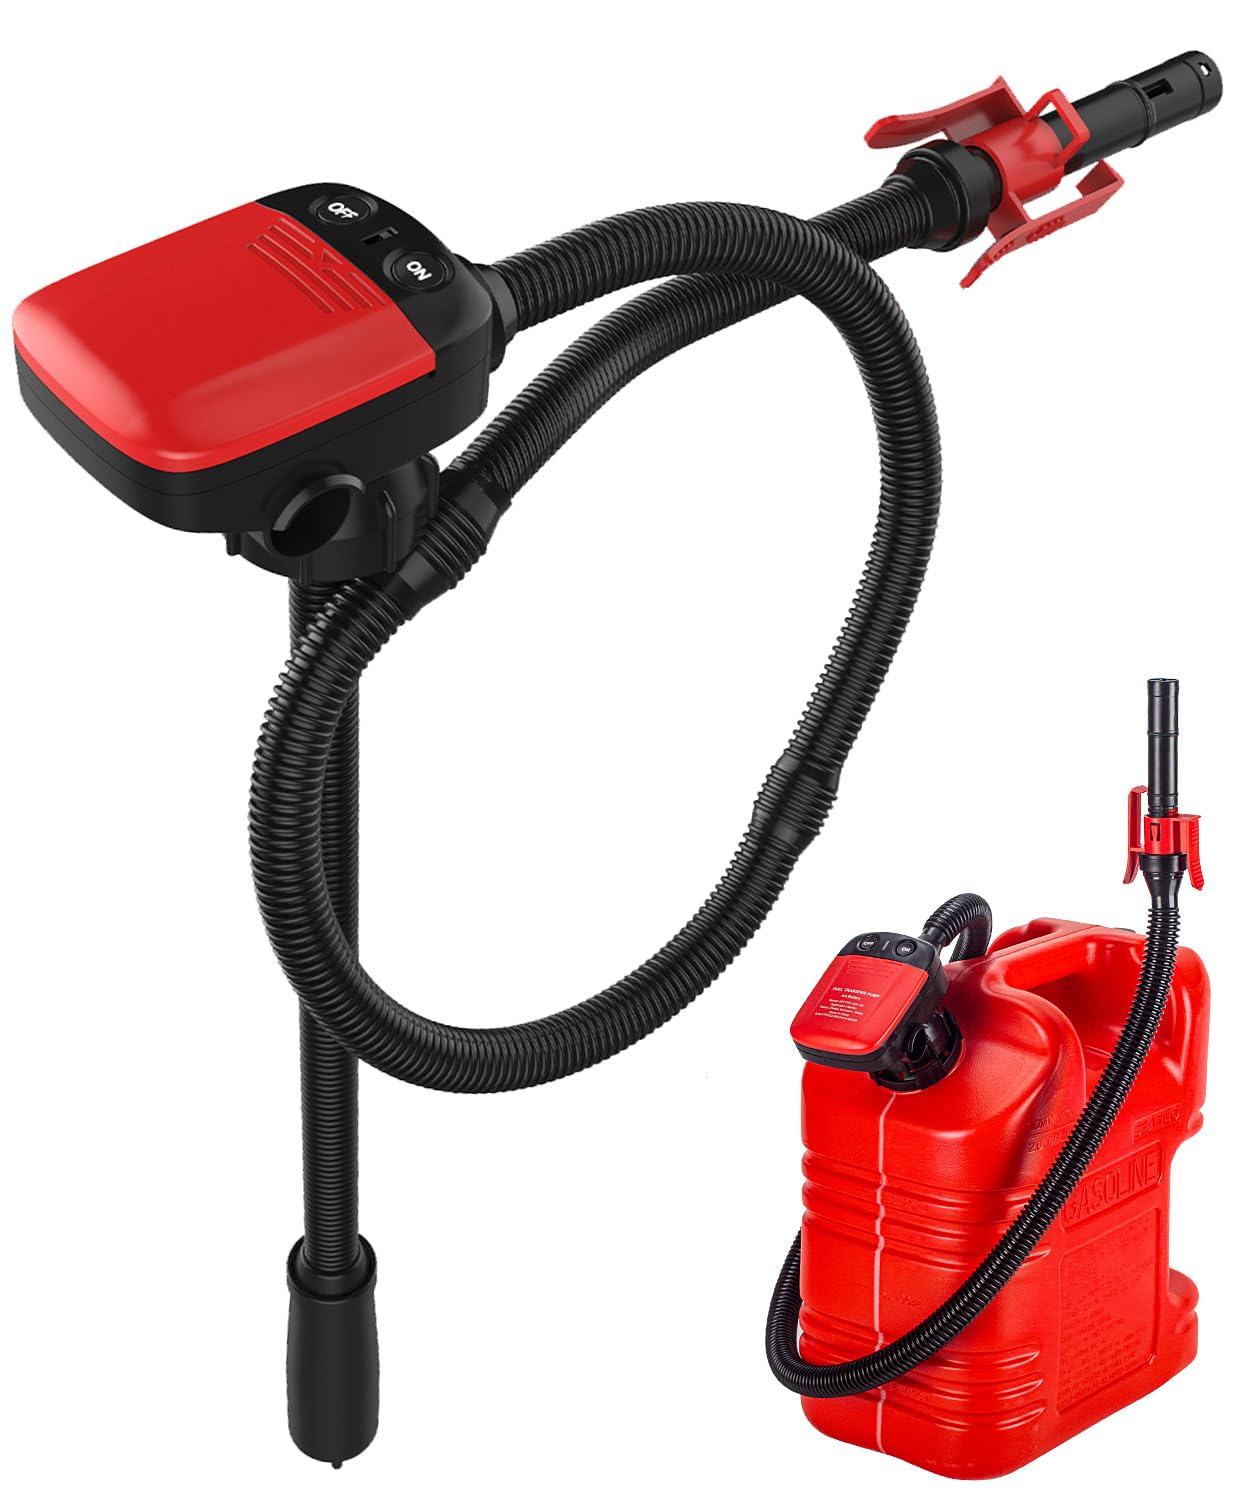 YaoFaFa Kraftstoff Umfüllpumpe mit Auto-Stopp-Sensor, Ölabsaugpumpe Elektrische Flüssigkeitstransferpumpe mit 3 Größen-Adapter,Dieselpumpe Kanisterpumpe mit Schlauch-2,4 GPM von YaoFaFa